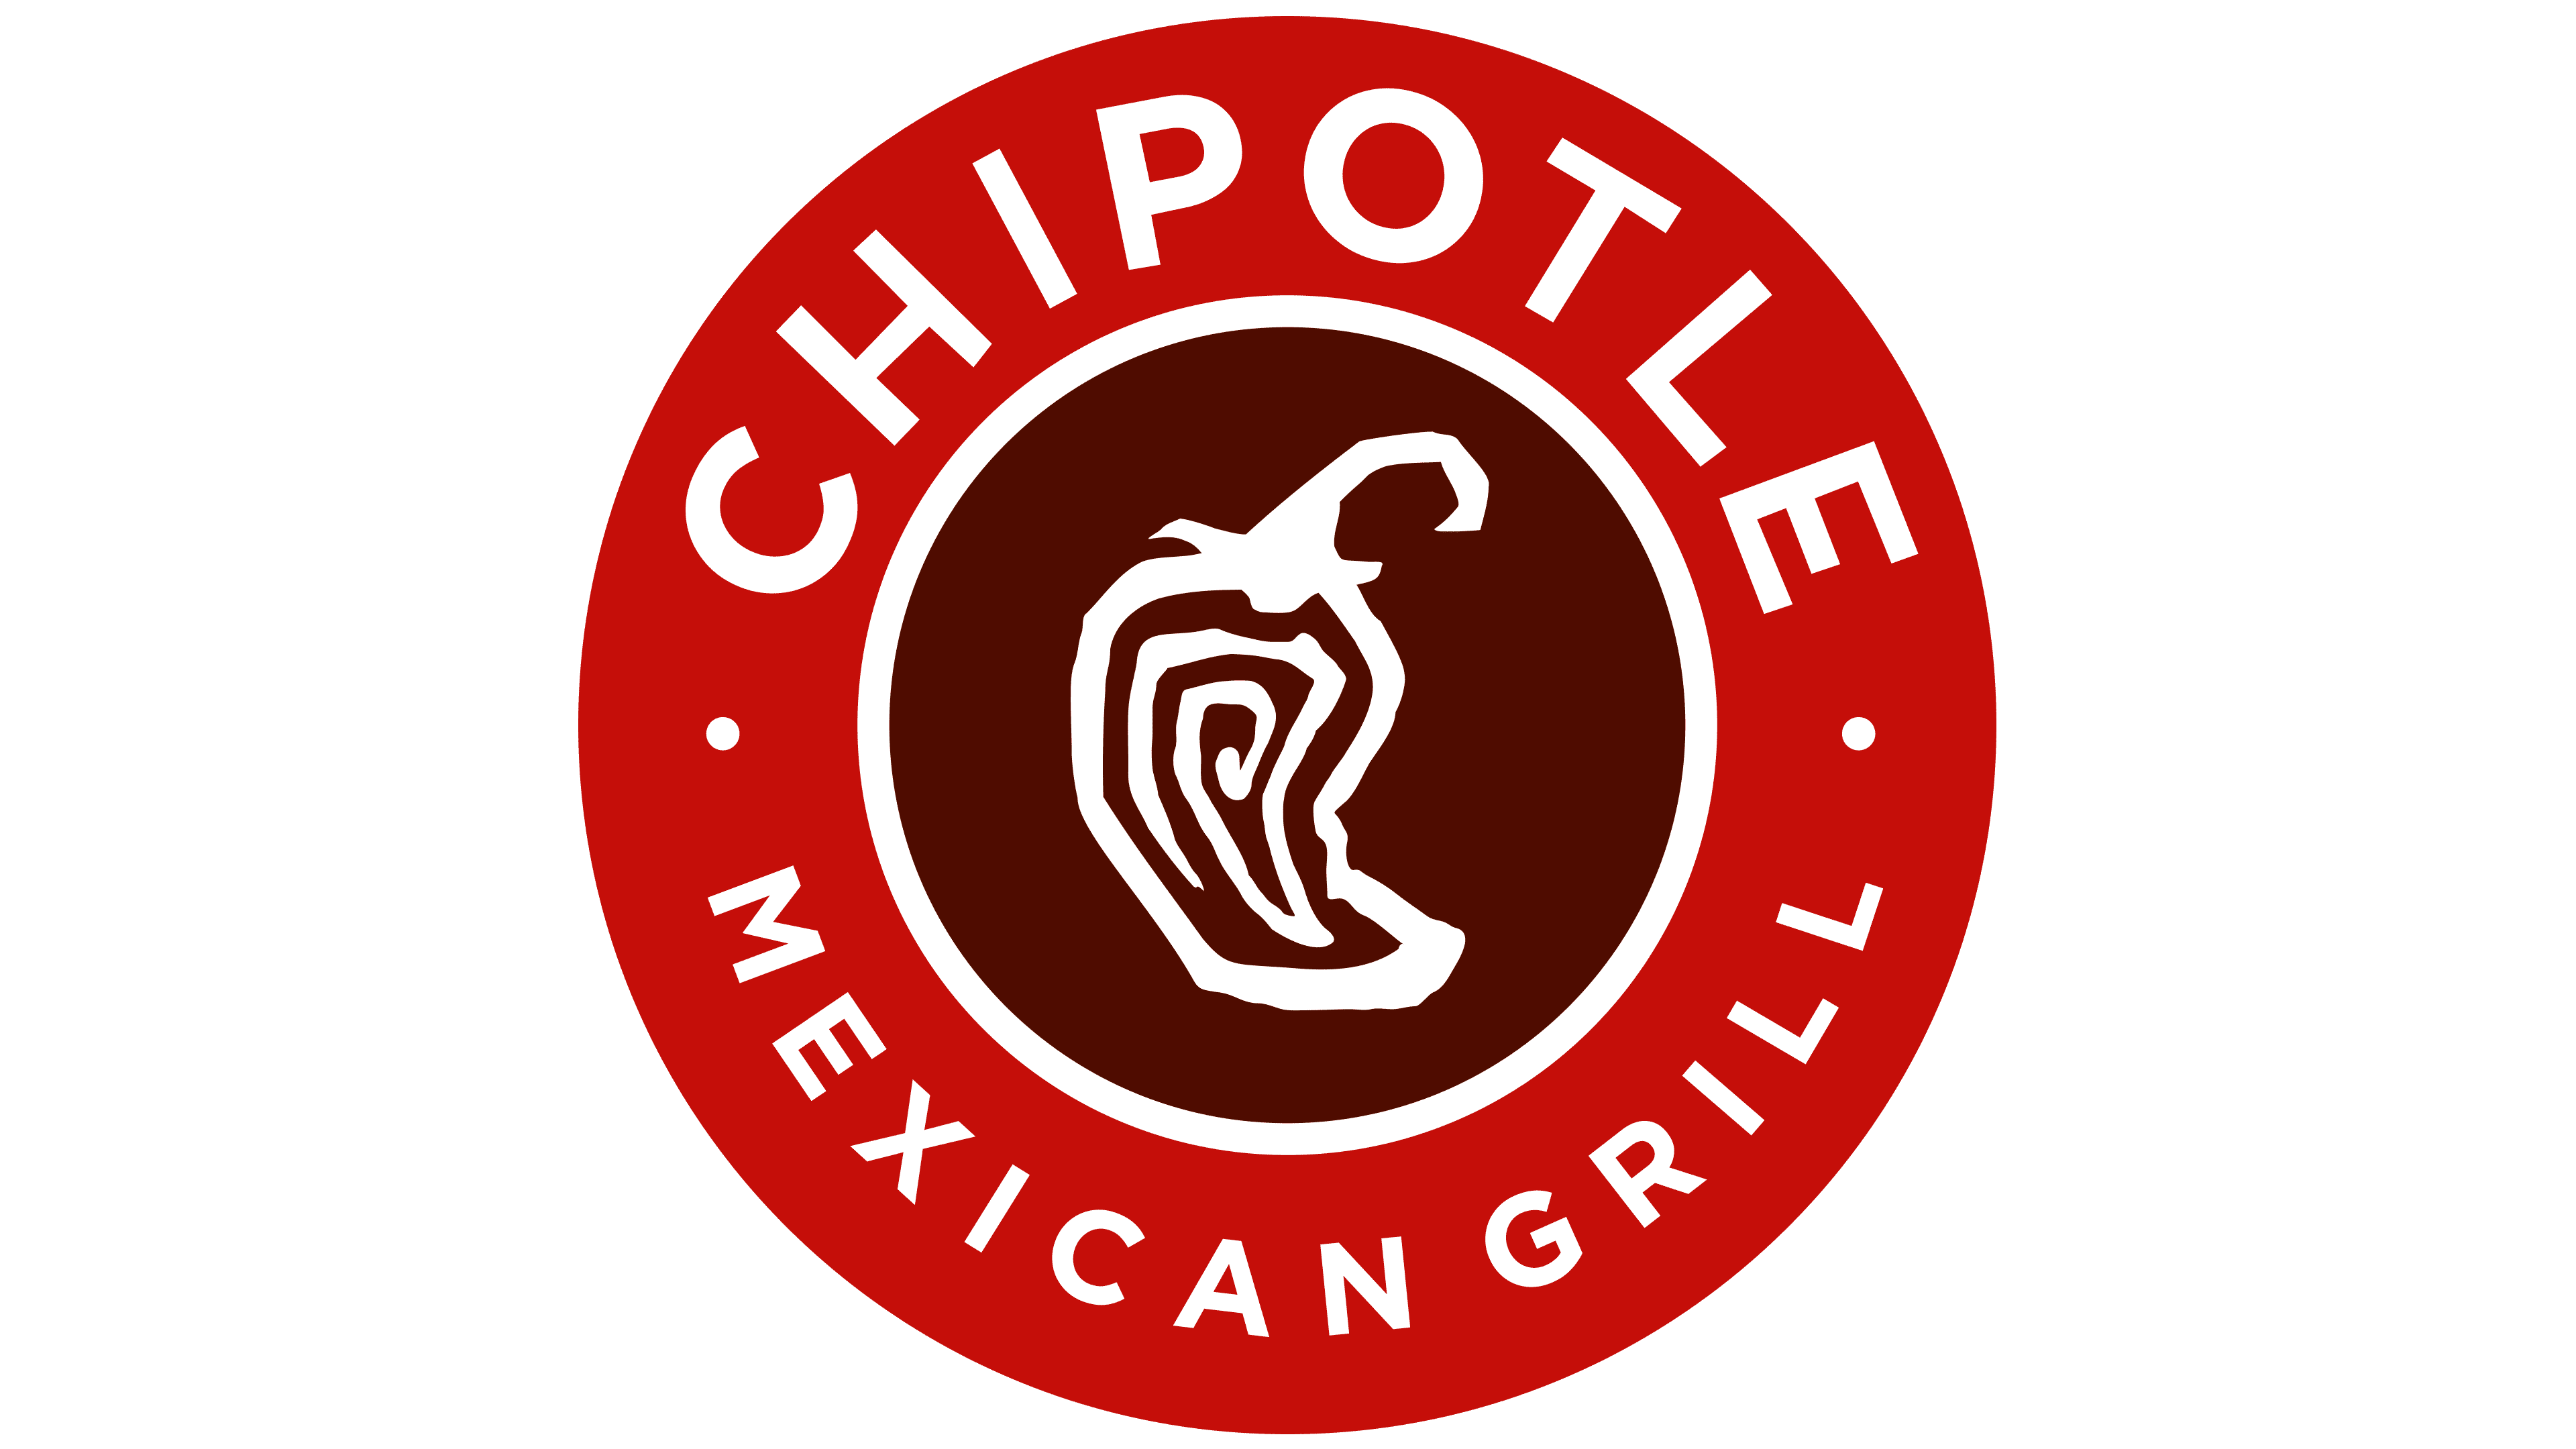 Zdroj: Chipotle Mexican Grill